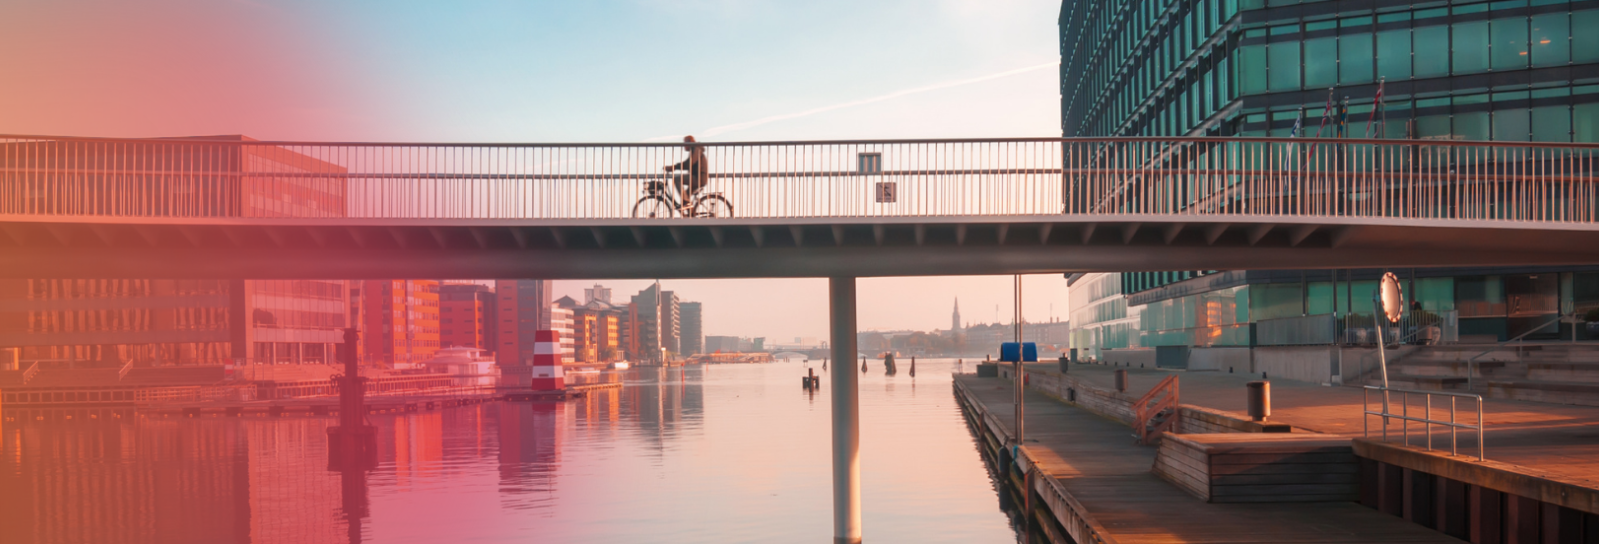 Bybillede af København. Cykelbro med cyklist.